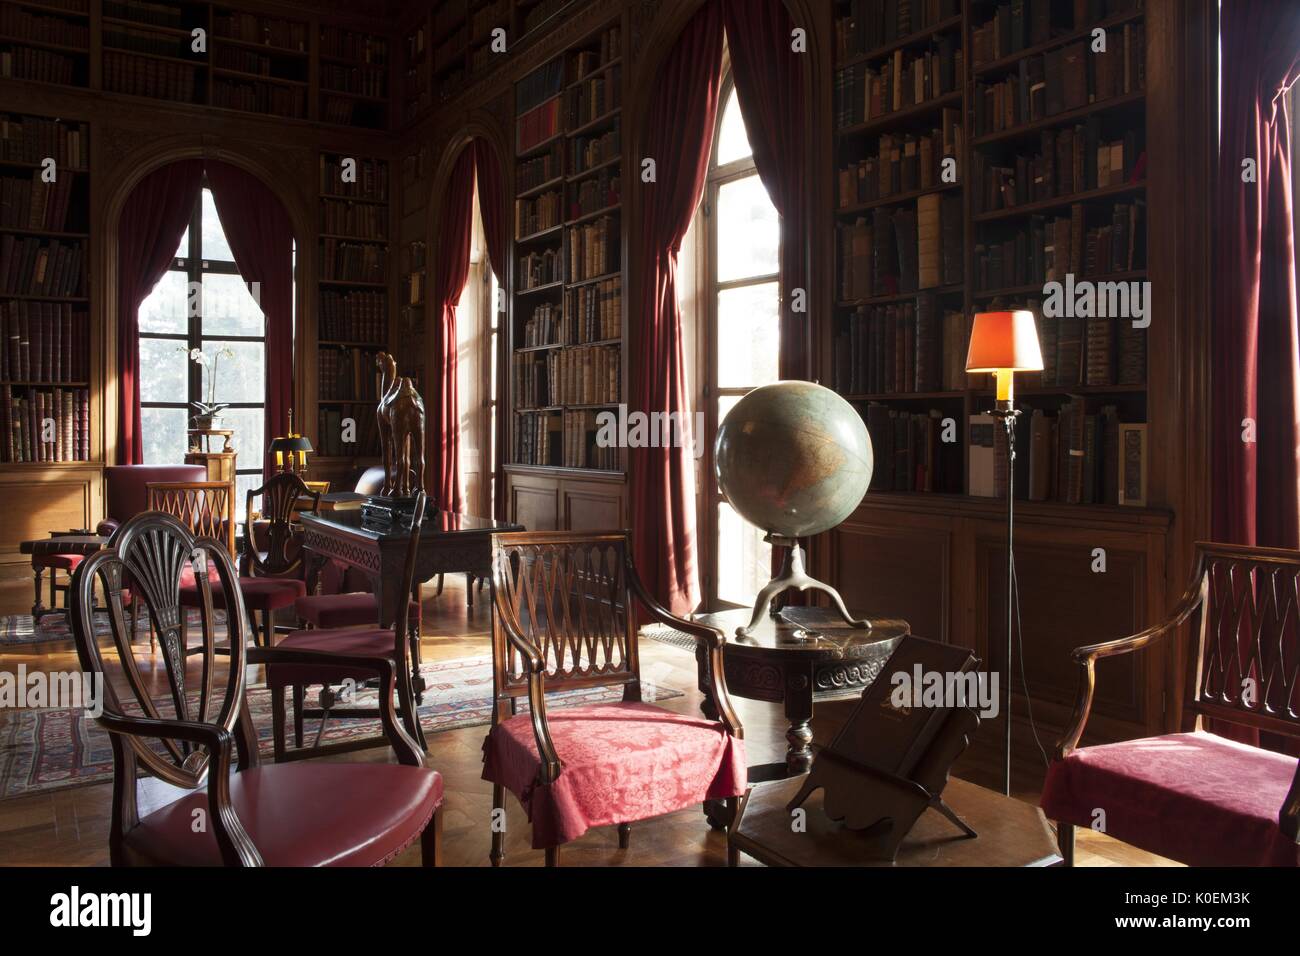 Decorate una stanza di seduta, ci sono un sacco di sedie in legno e built-in linea di scaffali di libri le pareti lungo con finestre da pavimento a soffitto, 2014. cortesia eric chen. Foto Stock